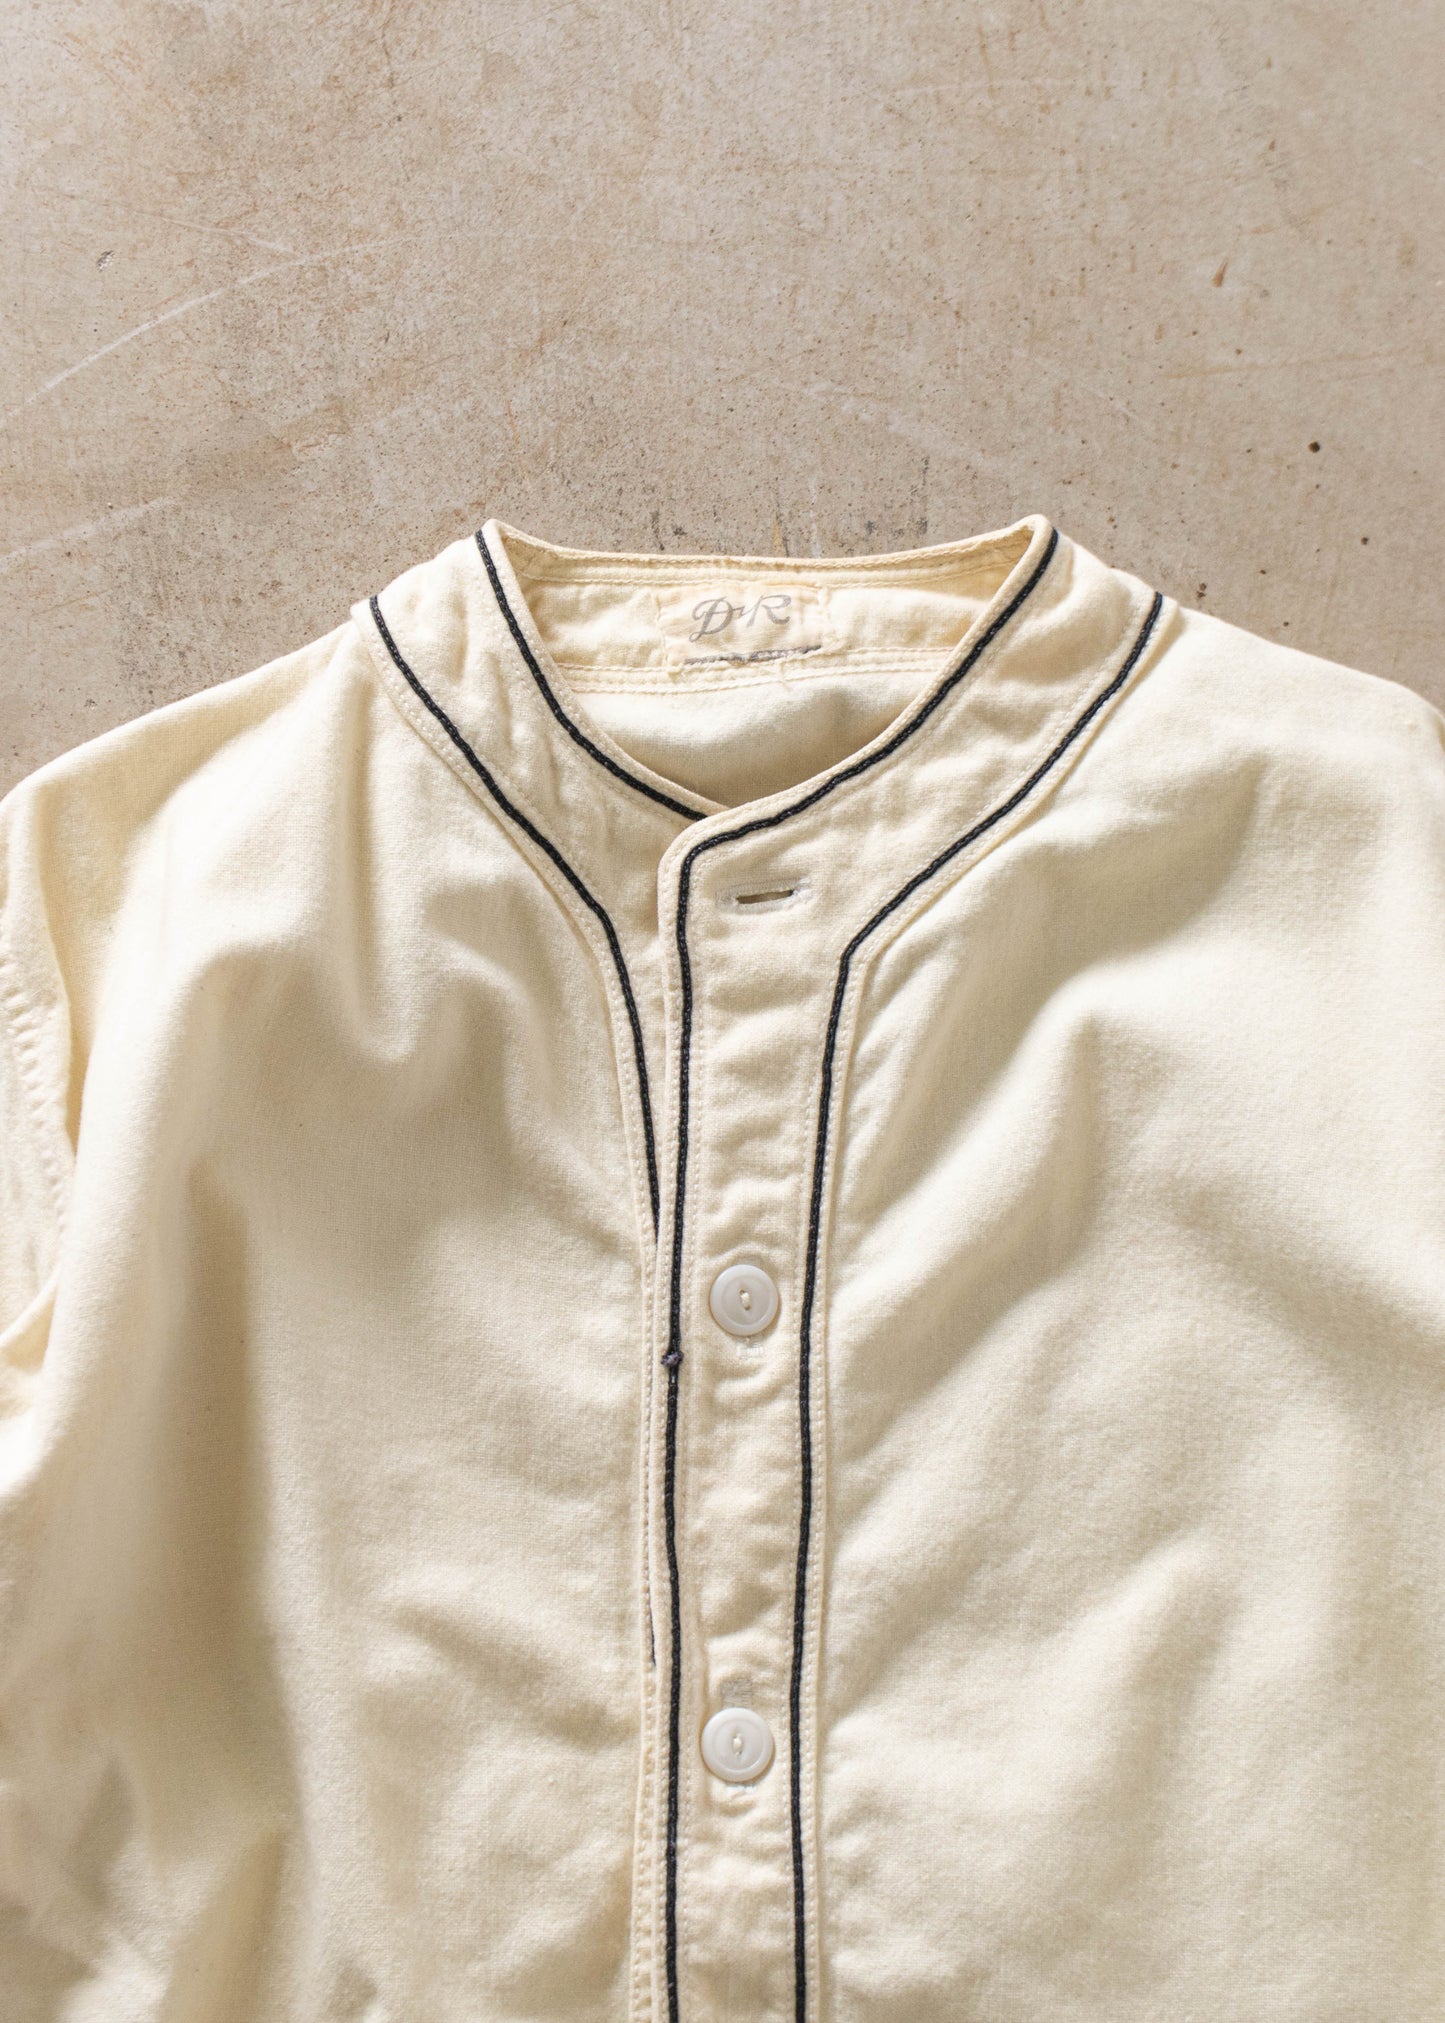 1950s Wool Baseball Jersey Shirt Size L/XL